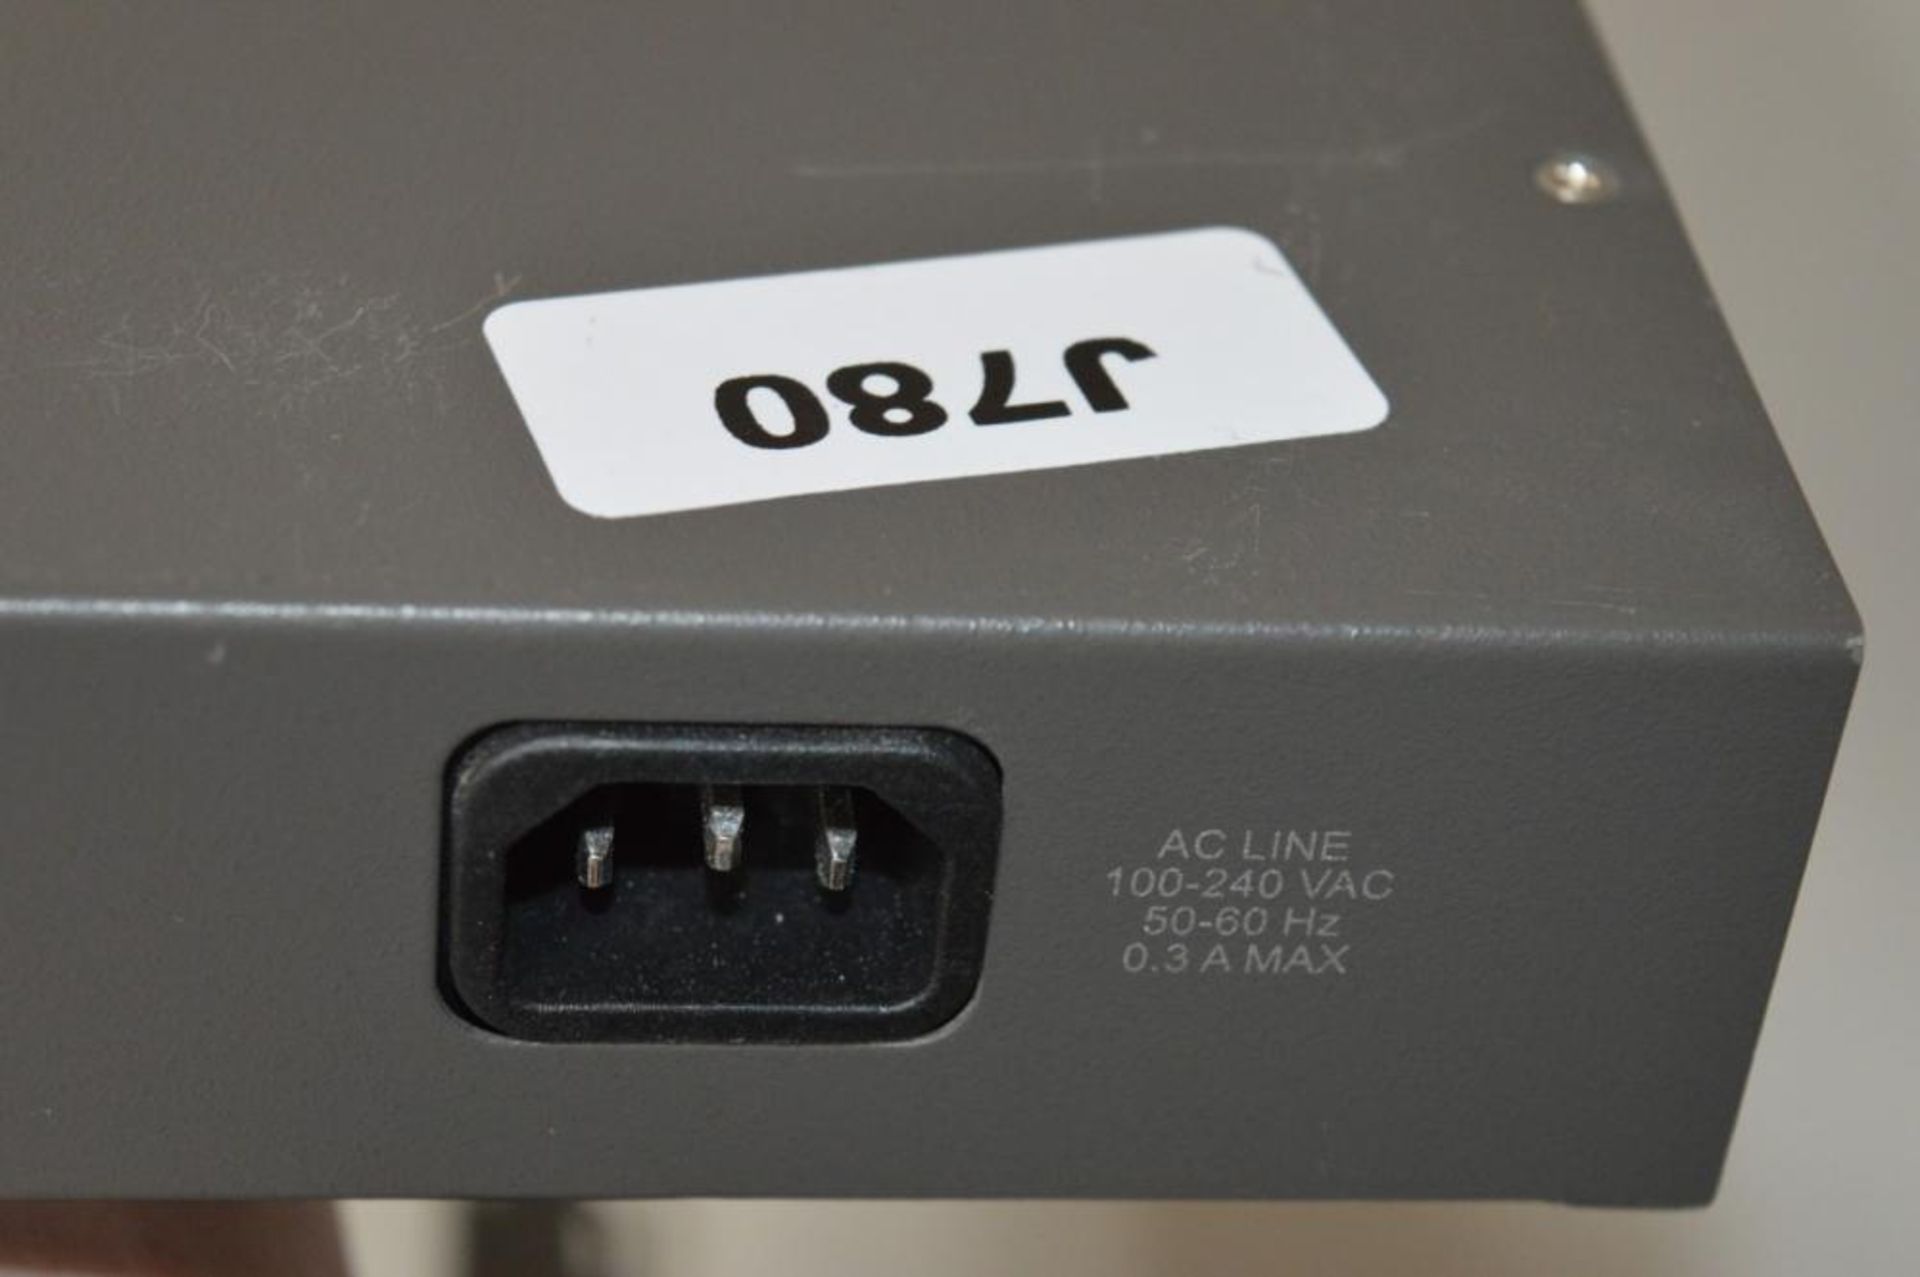 1 x DLink 10/100 16 Port Fast Ethernet Switch - Model DES-1016R+ - CL249 - Ref J780 - Location: Altr - Image 2 of 4